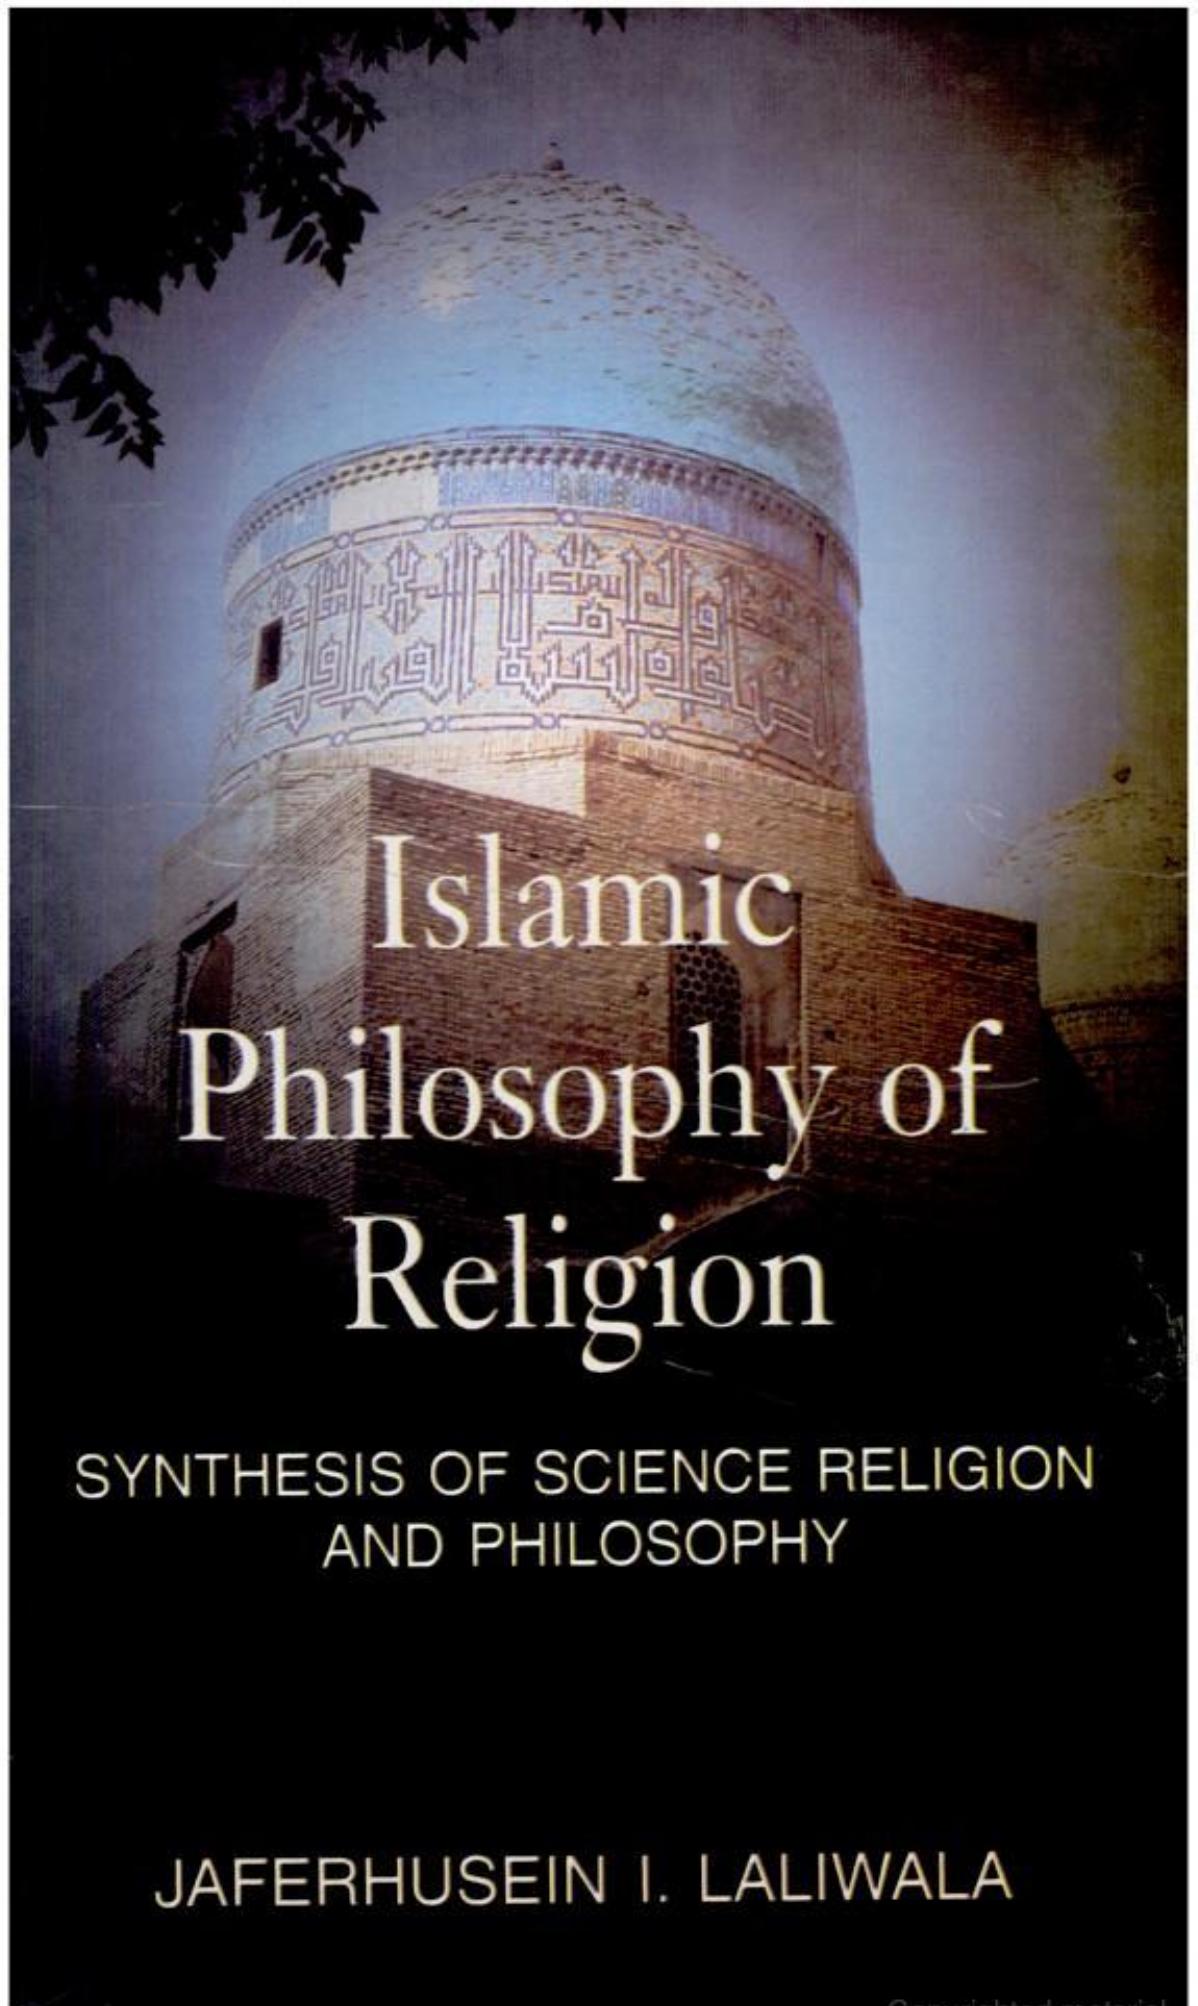 Islamic philosphy of religion